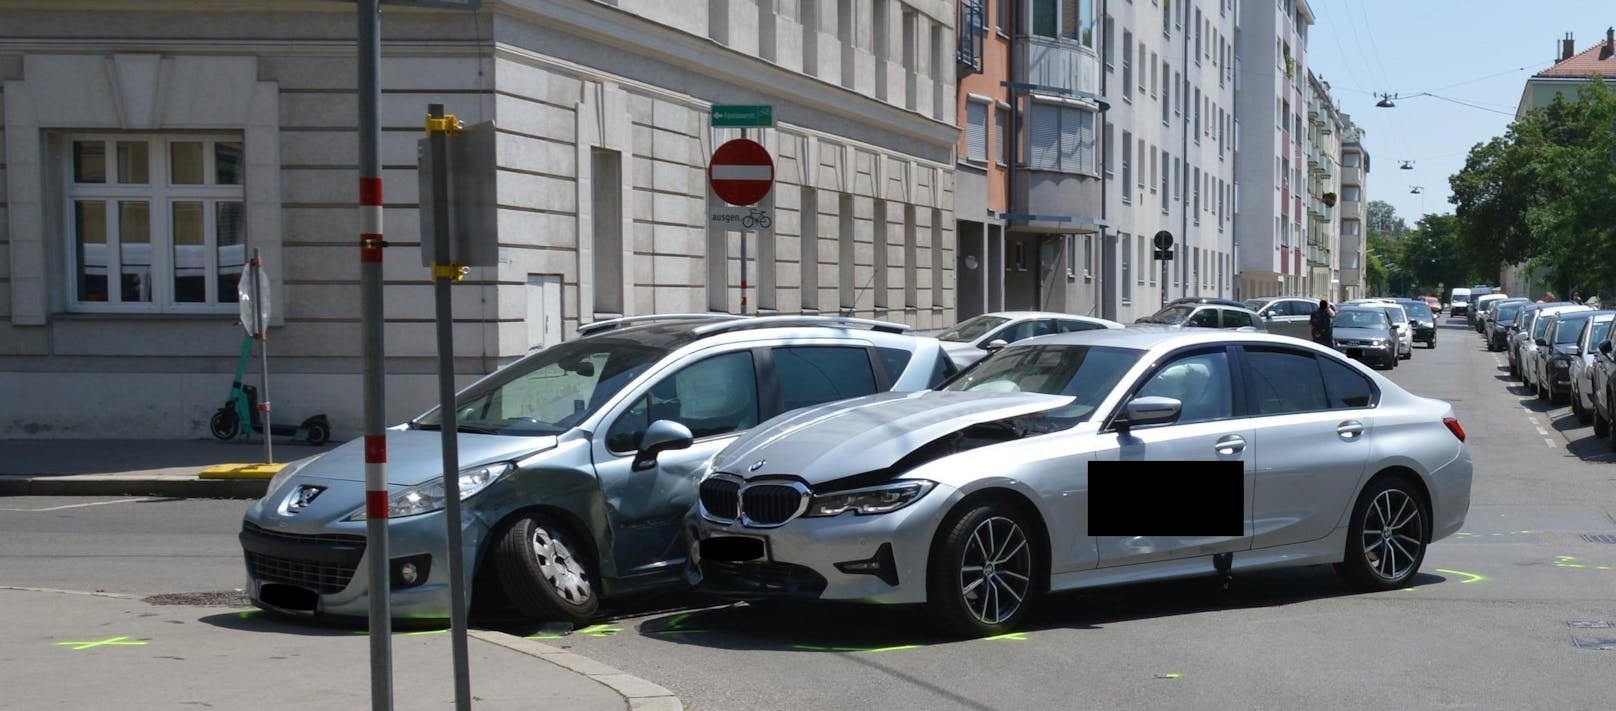 Eine 34-jährige Autofahrerin soll am Kinzerplatz Richtung Donaufelder Straße gefahren sein, als es an der Kreuzung mit der Nordmanngasse zur Kollision mit dem PKW einer 62-Jährigen, welche Richtung Fultonstraße unterwegs war, gekommen sein soll.